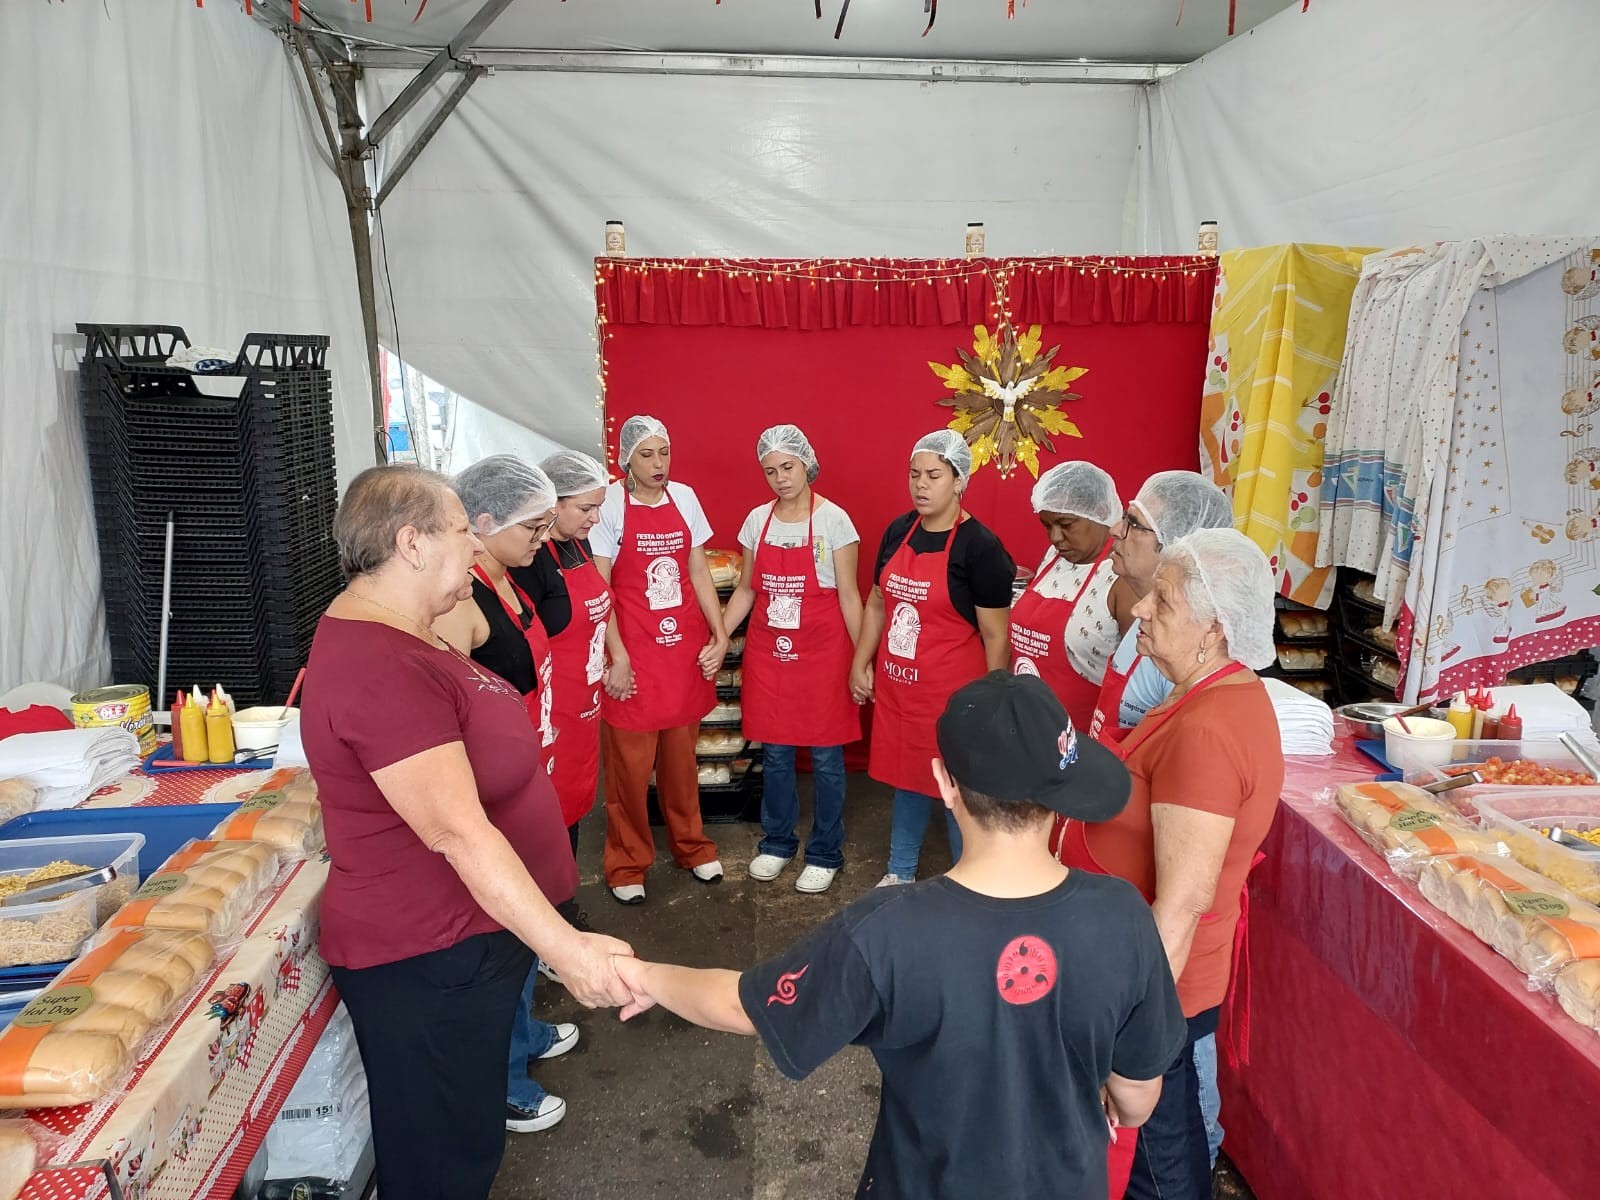 Festa do Divino: entidades sociais contam com vendas na quermesse para manutenção de atividades